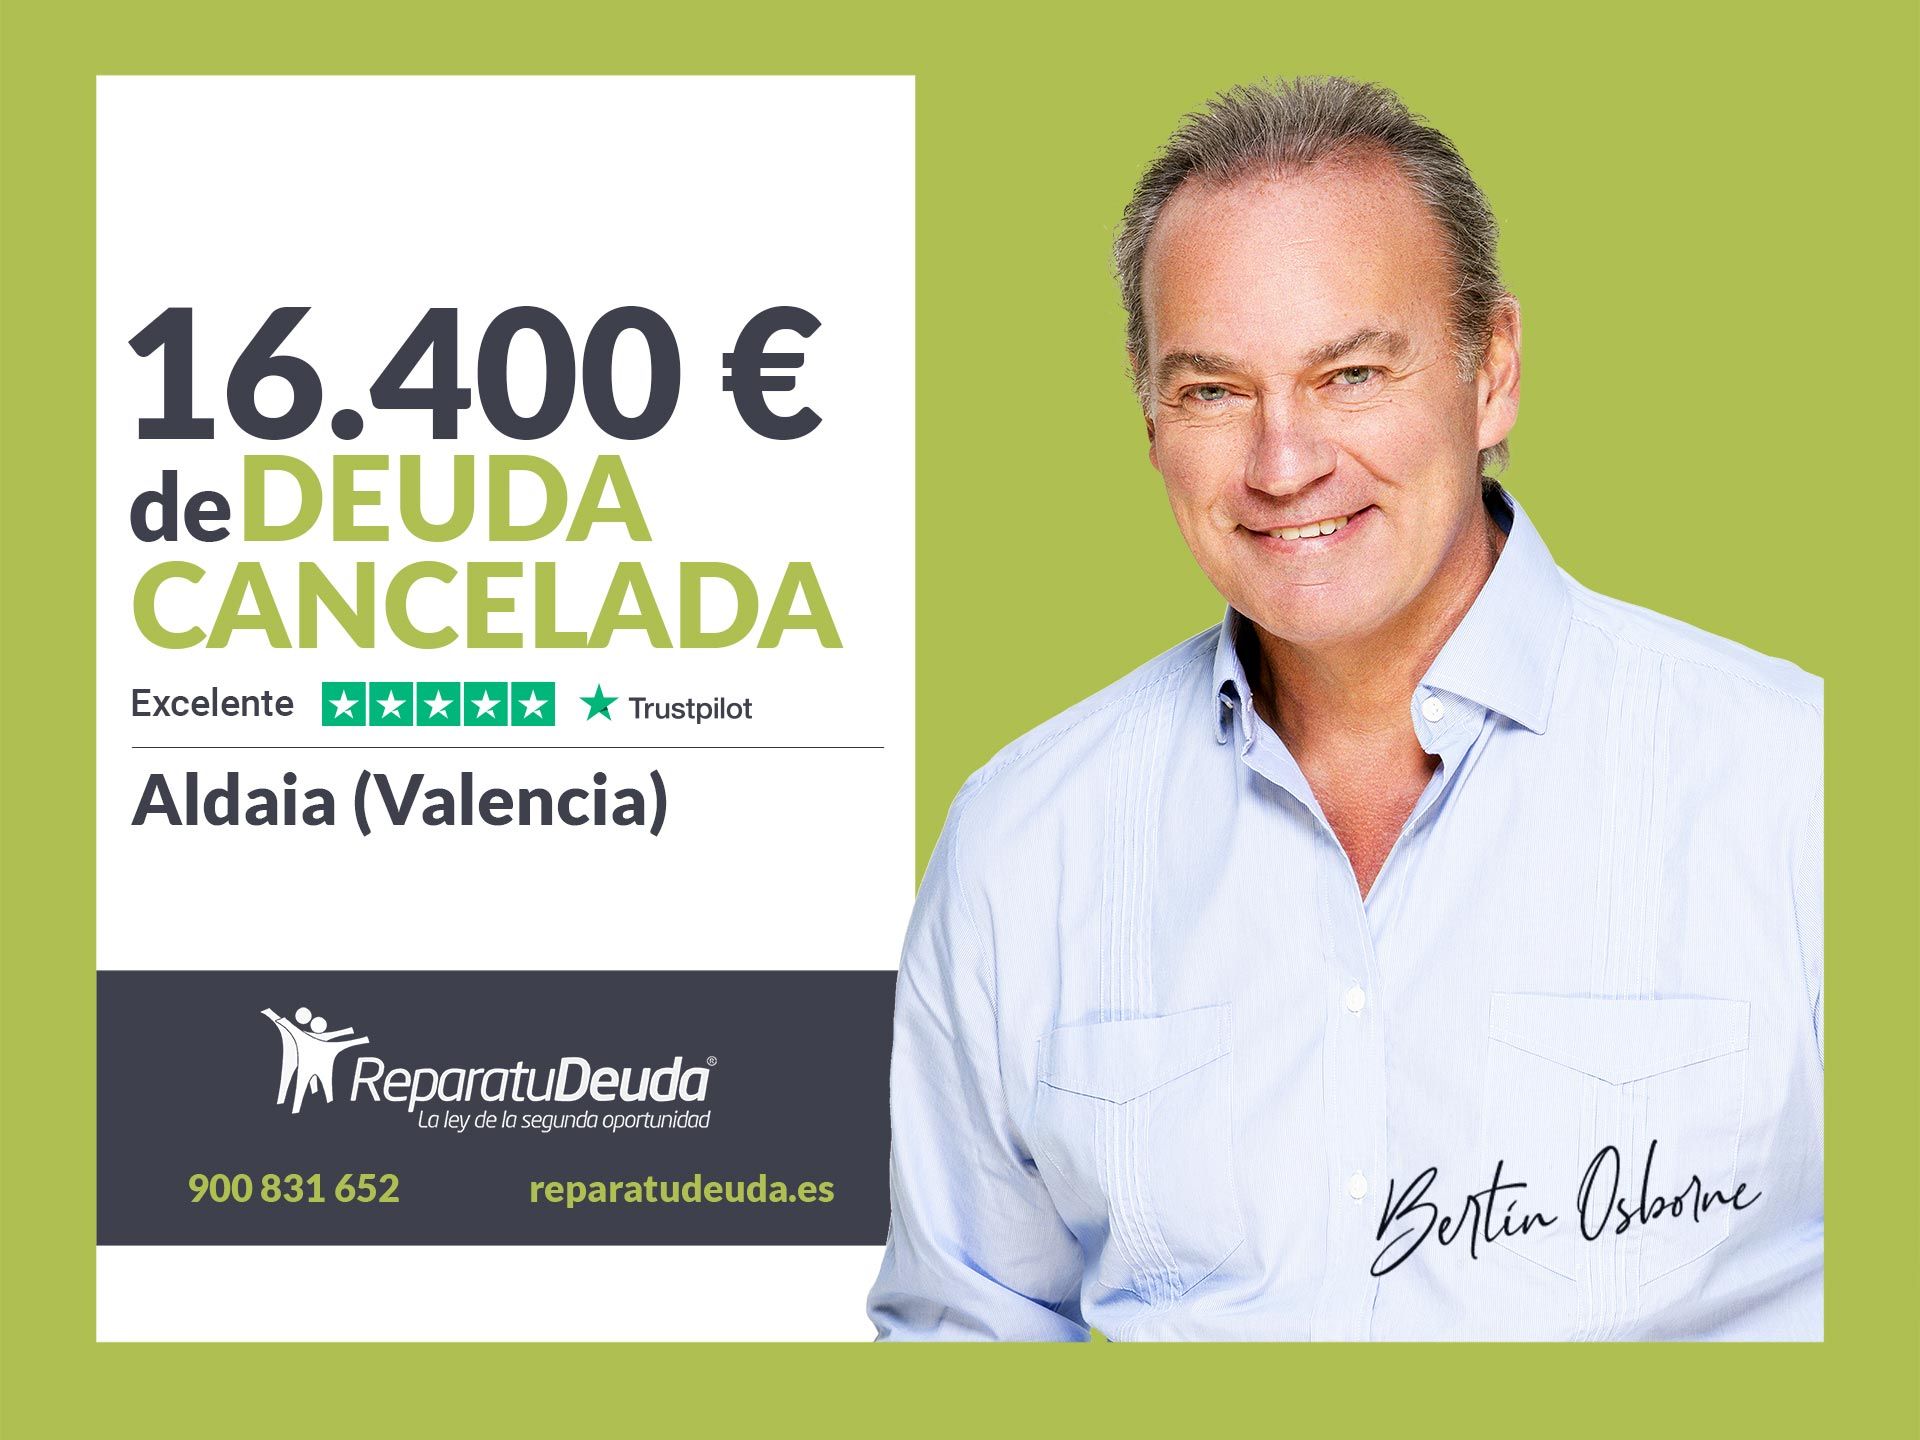 Repara tu Deuda Abogados cancela 16.400? en Aldaia (Valencia) con la Ley de Segunda Oportunidad